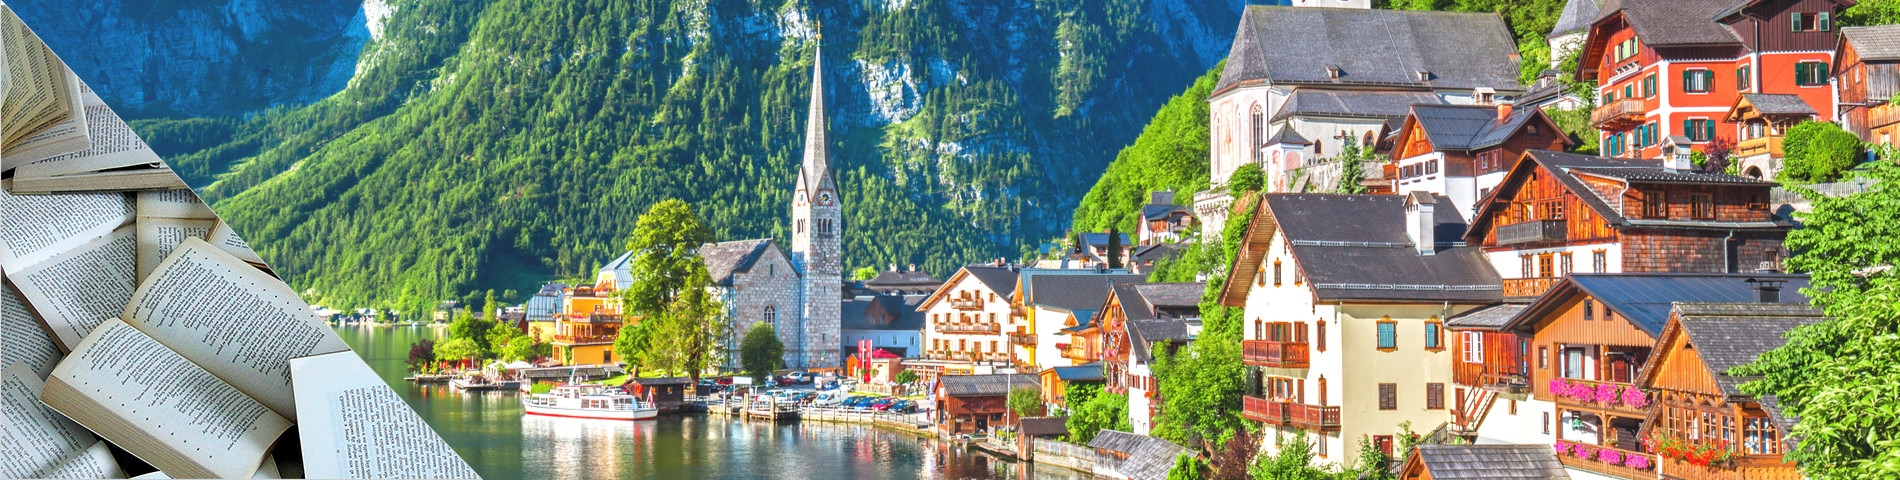 ประเทศสวิตเซอร์แลนด์ - หลักสูตรเข้มข้นพิเศษ(ไม่ต่ำกว่า 35 ชั่วโมง)